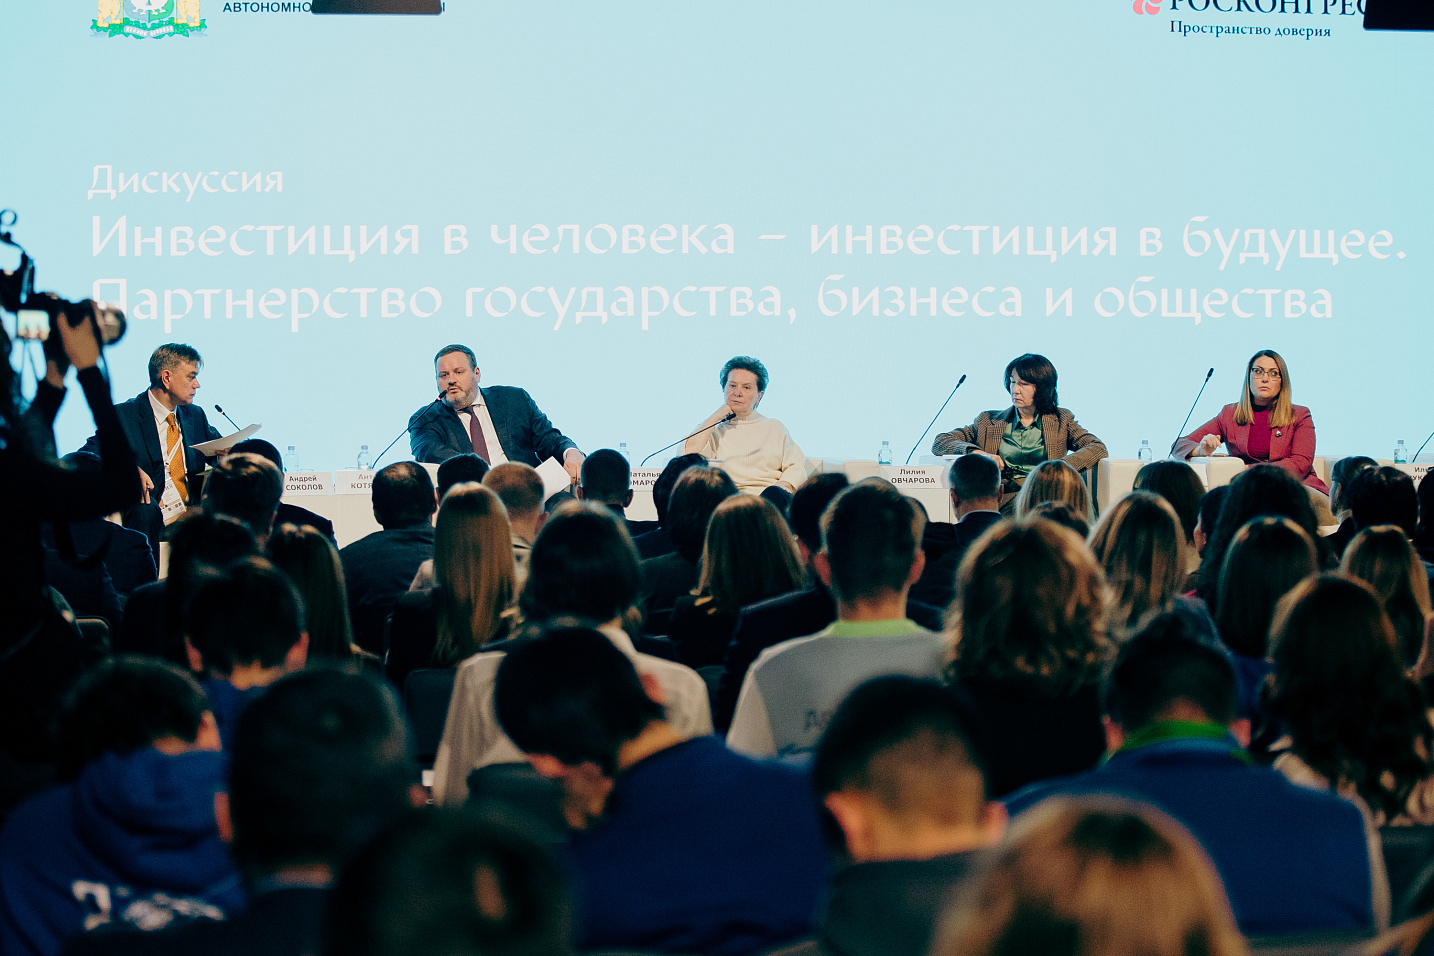 В феврале в деловой программе Ханты–Мансийского автономного округа - Югры на выставке «Россия» состоятся 3 сессии